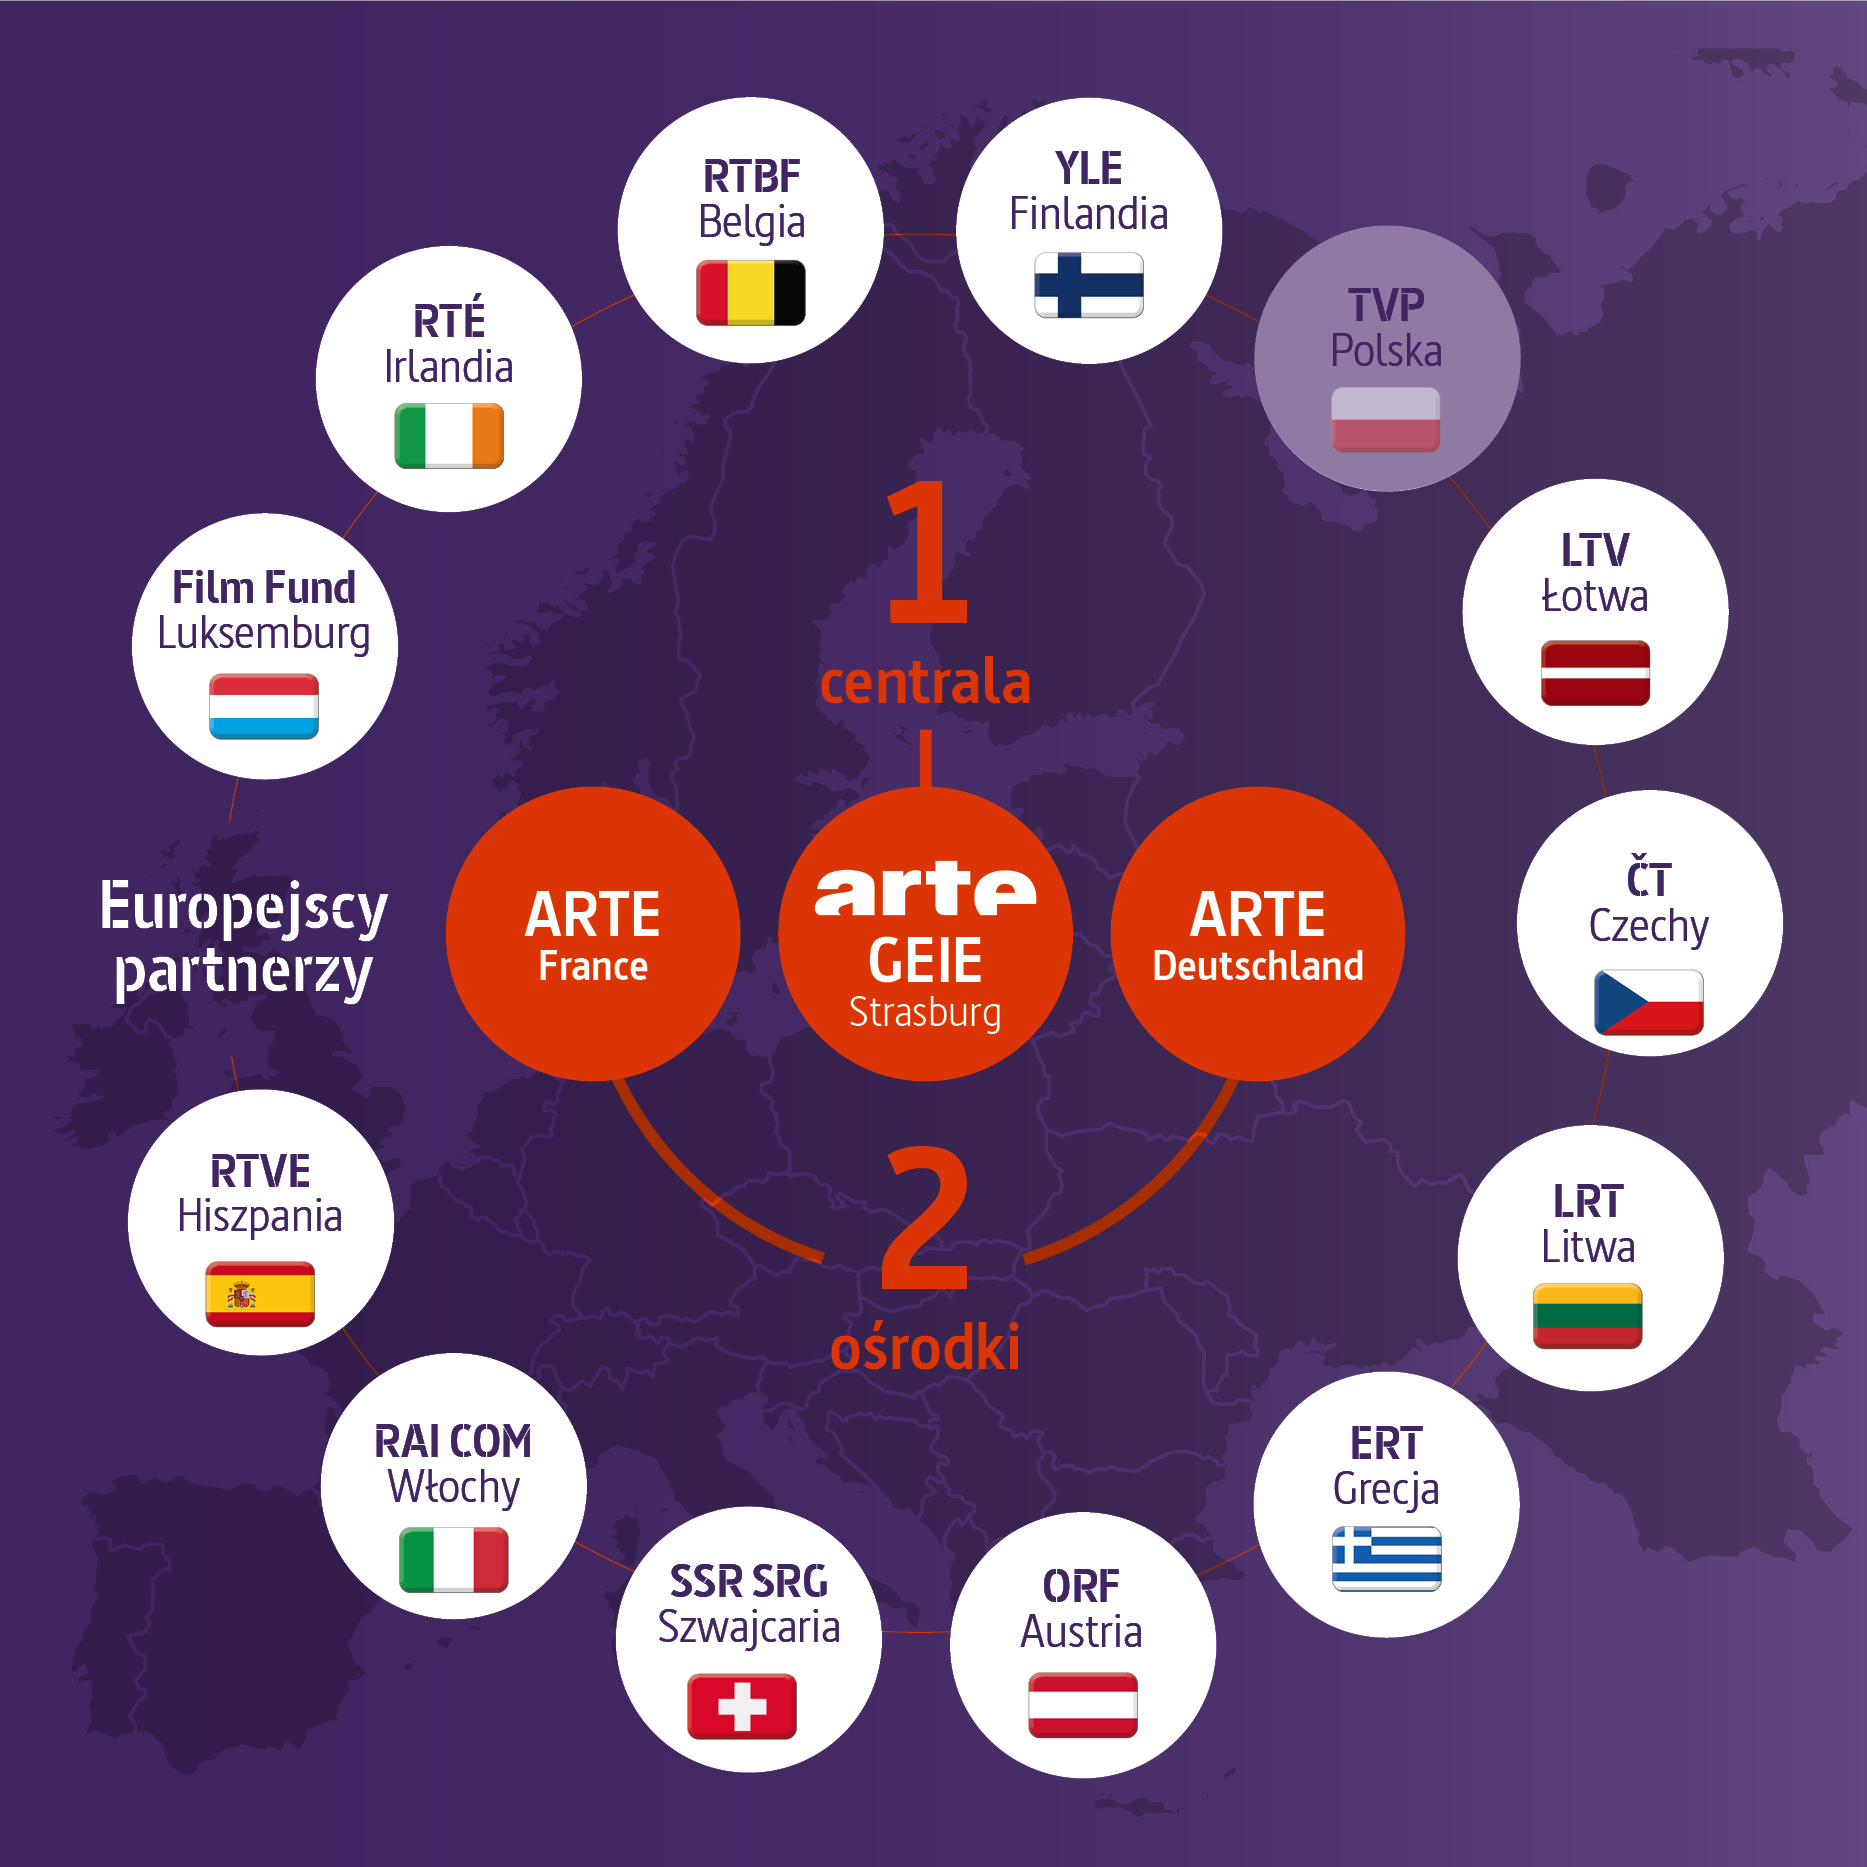 Na tle mapy Europy w centrum znajduje się centrala ARTE GEIE w Strasburgu. Obok niej znajdują się dwa ośrodki ARTE: ARTE Deutschland i ARTE France.
Wokół Grupy ARTE znajdują się jej partnerzy w Europie: Fundusz Filmowy w Luksemburgu, RTÉ w Irlandii, RTBF w Belgii, YLE w Finlandii, TVP w Polsce (w wyblakłych kolorach), LTV w Łotwie, ČT w Czechach, LRT w Litwie, ERT w Grecji, ORF w Austrii, SSR SRG w Szwajcarii, RAI Com we Włoszech i RTVE w Hiszpanii.